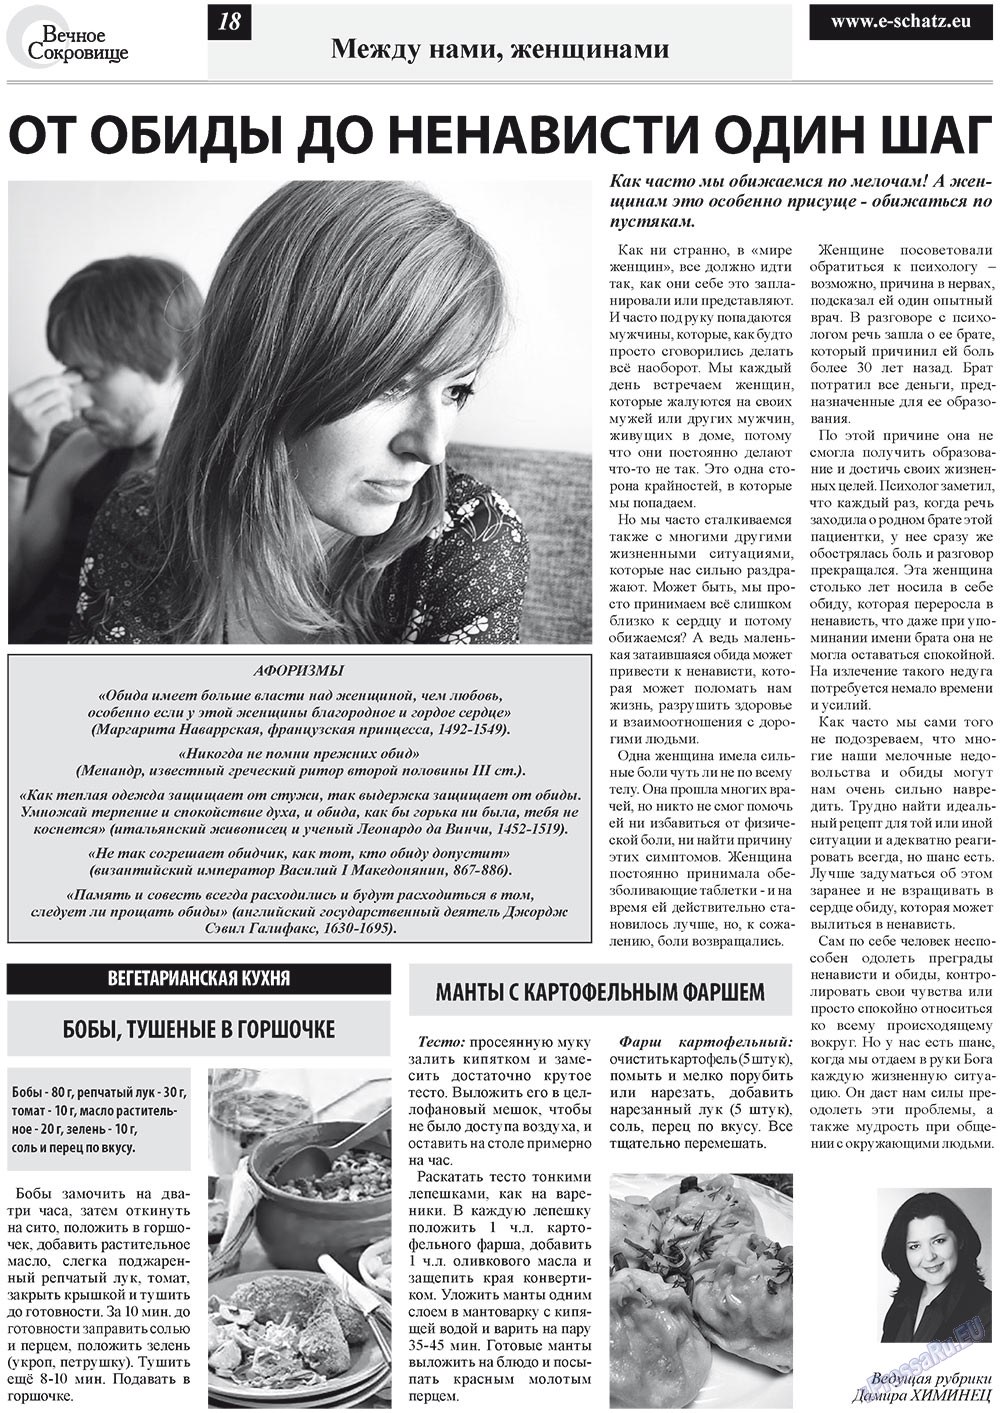 Вечное сокровище (газета). 2012 год, номер 2, стр. 18